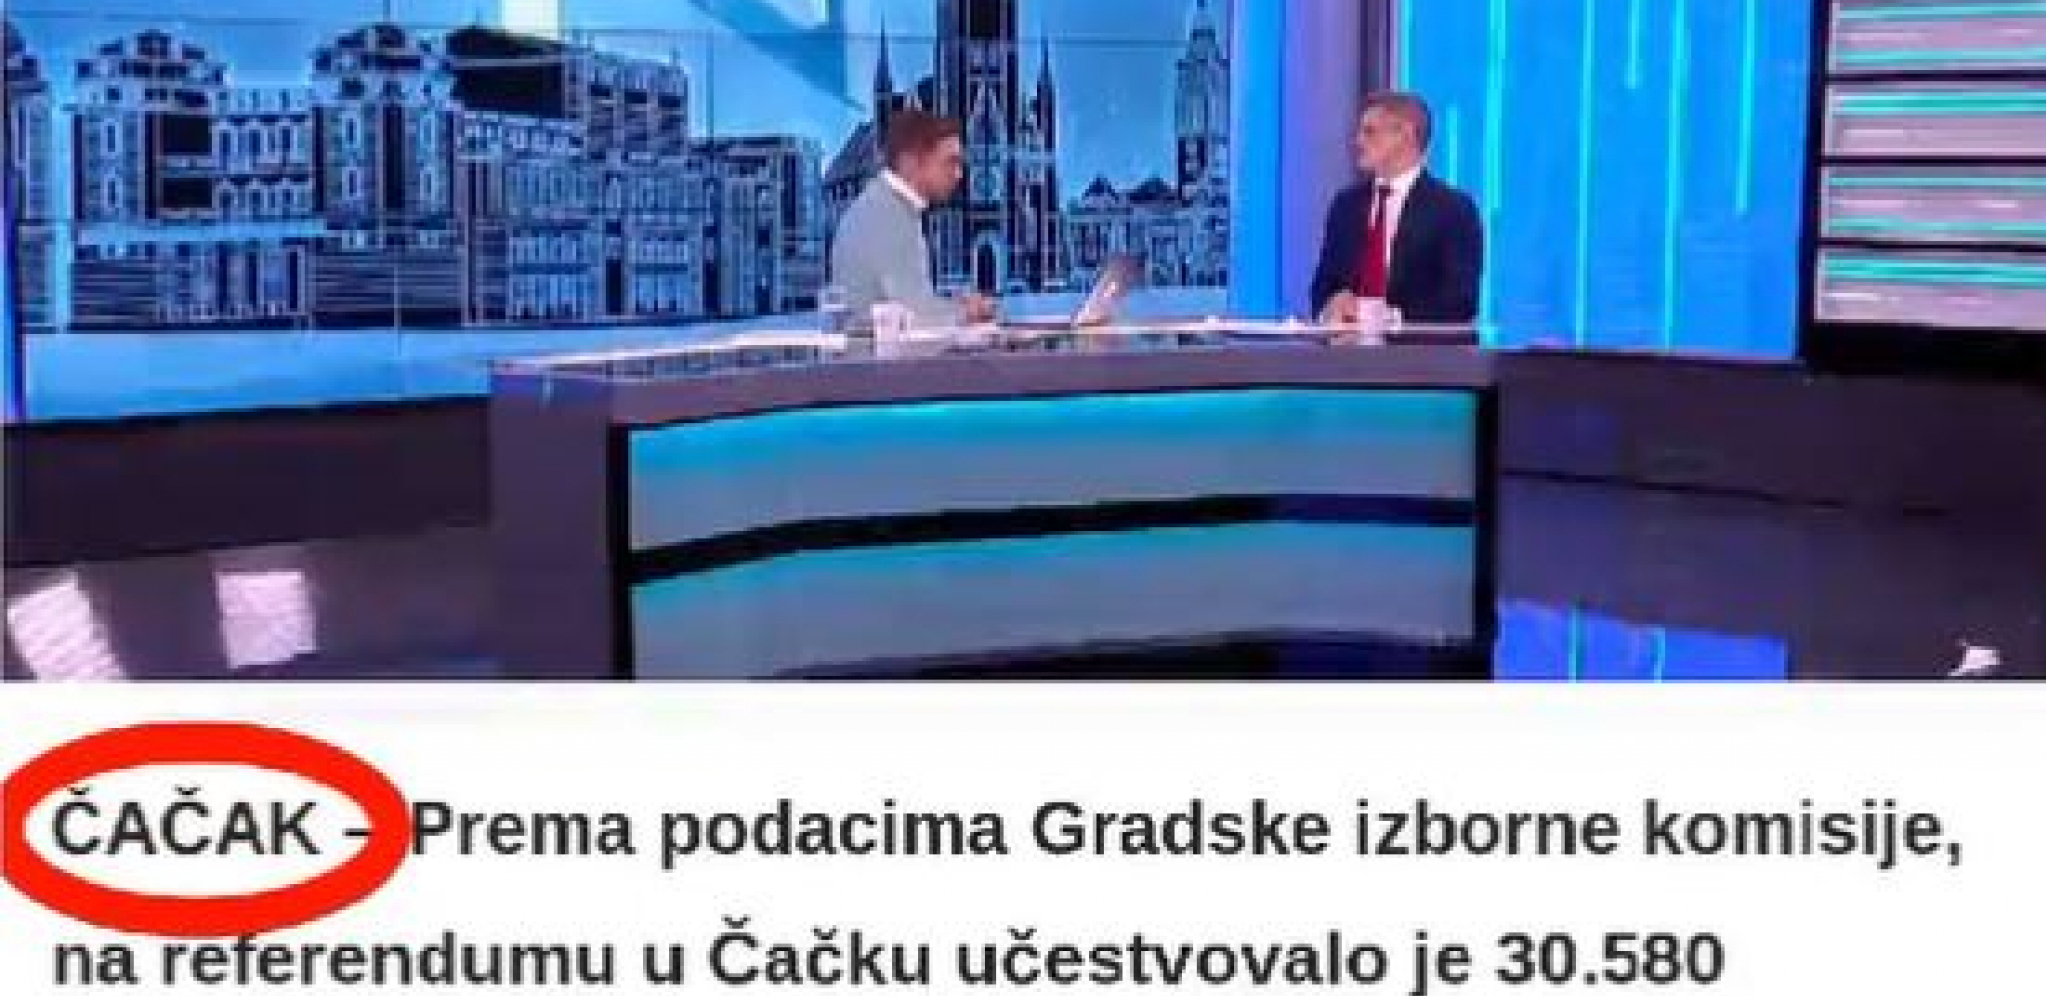 LAŽU, NA BOGA NE MISLE! Sramne neistine na Šolakovoj televiziji zgrozile celu Srbiju (VIDEO)